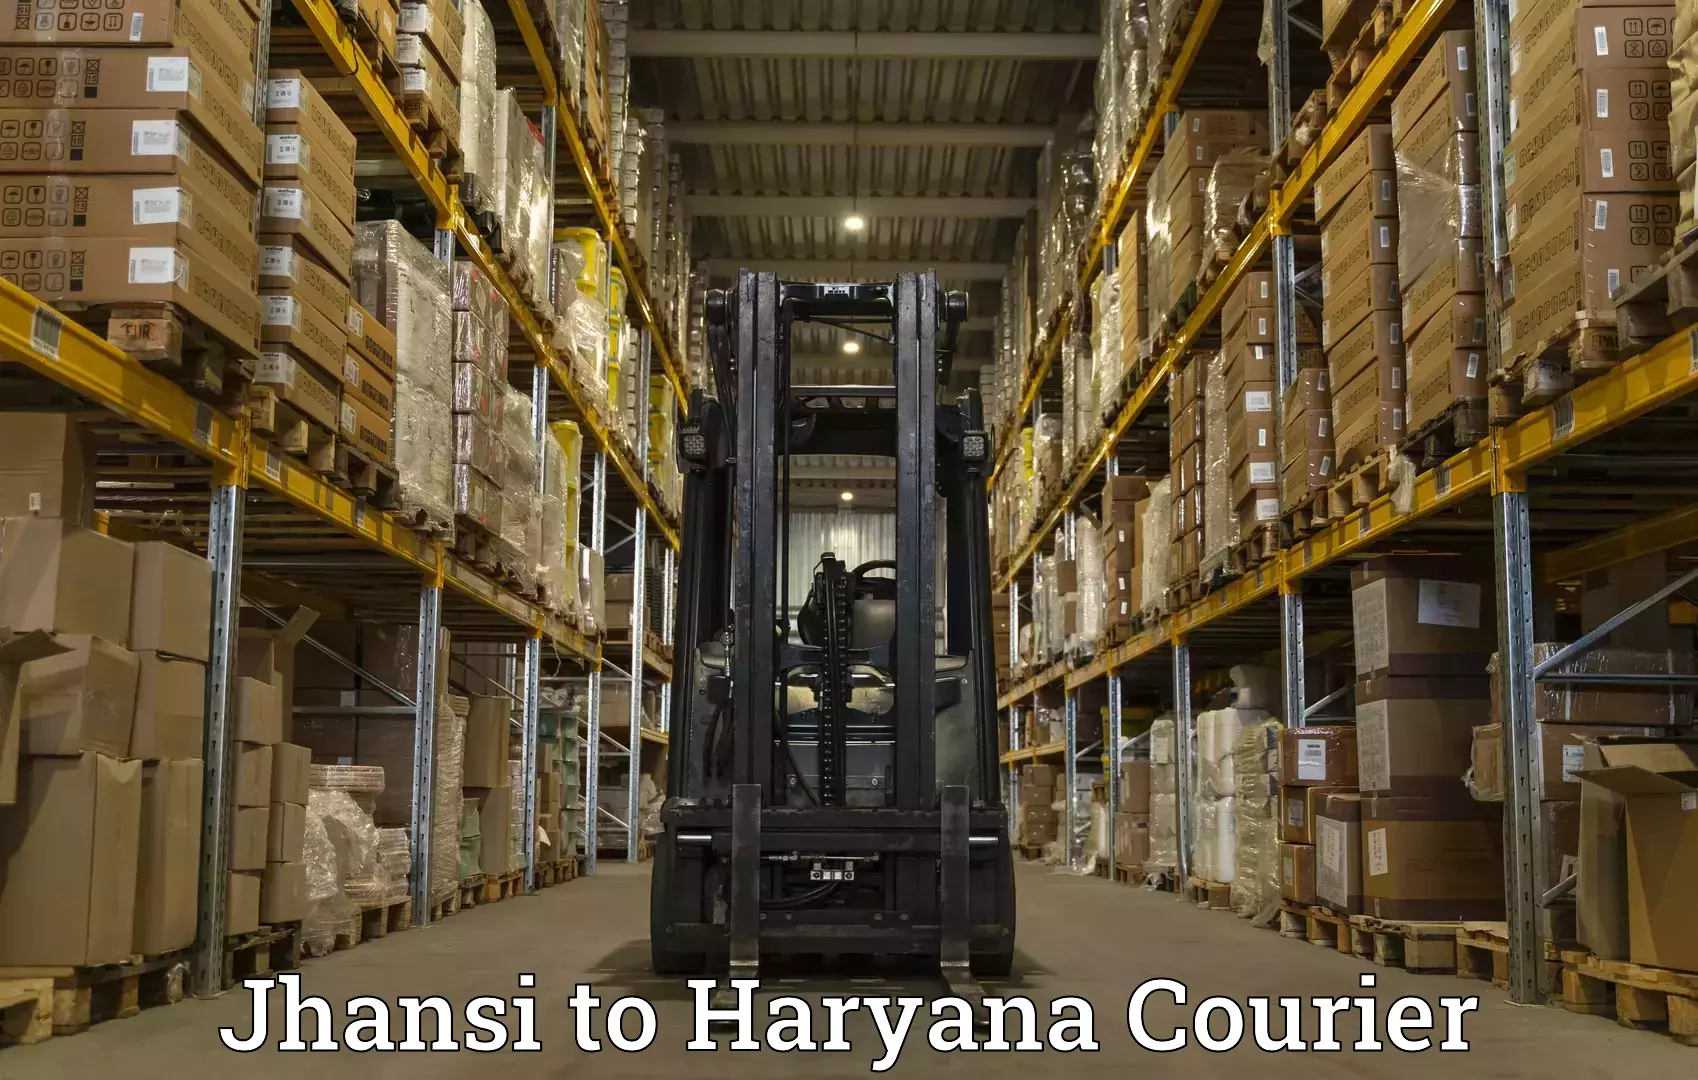 Door-to-door freight service Jhansi to Haryana